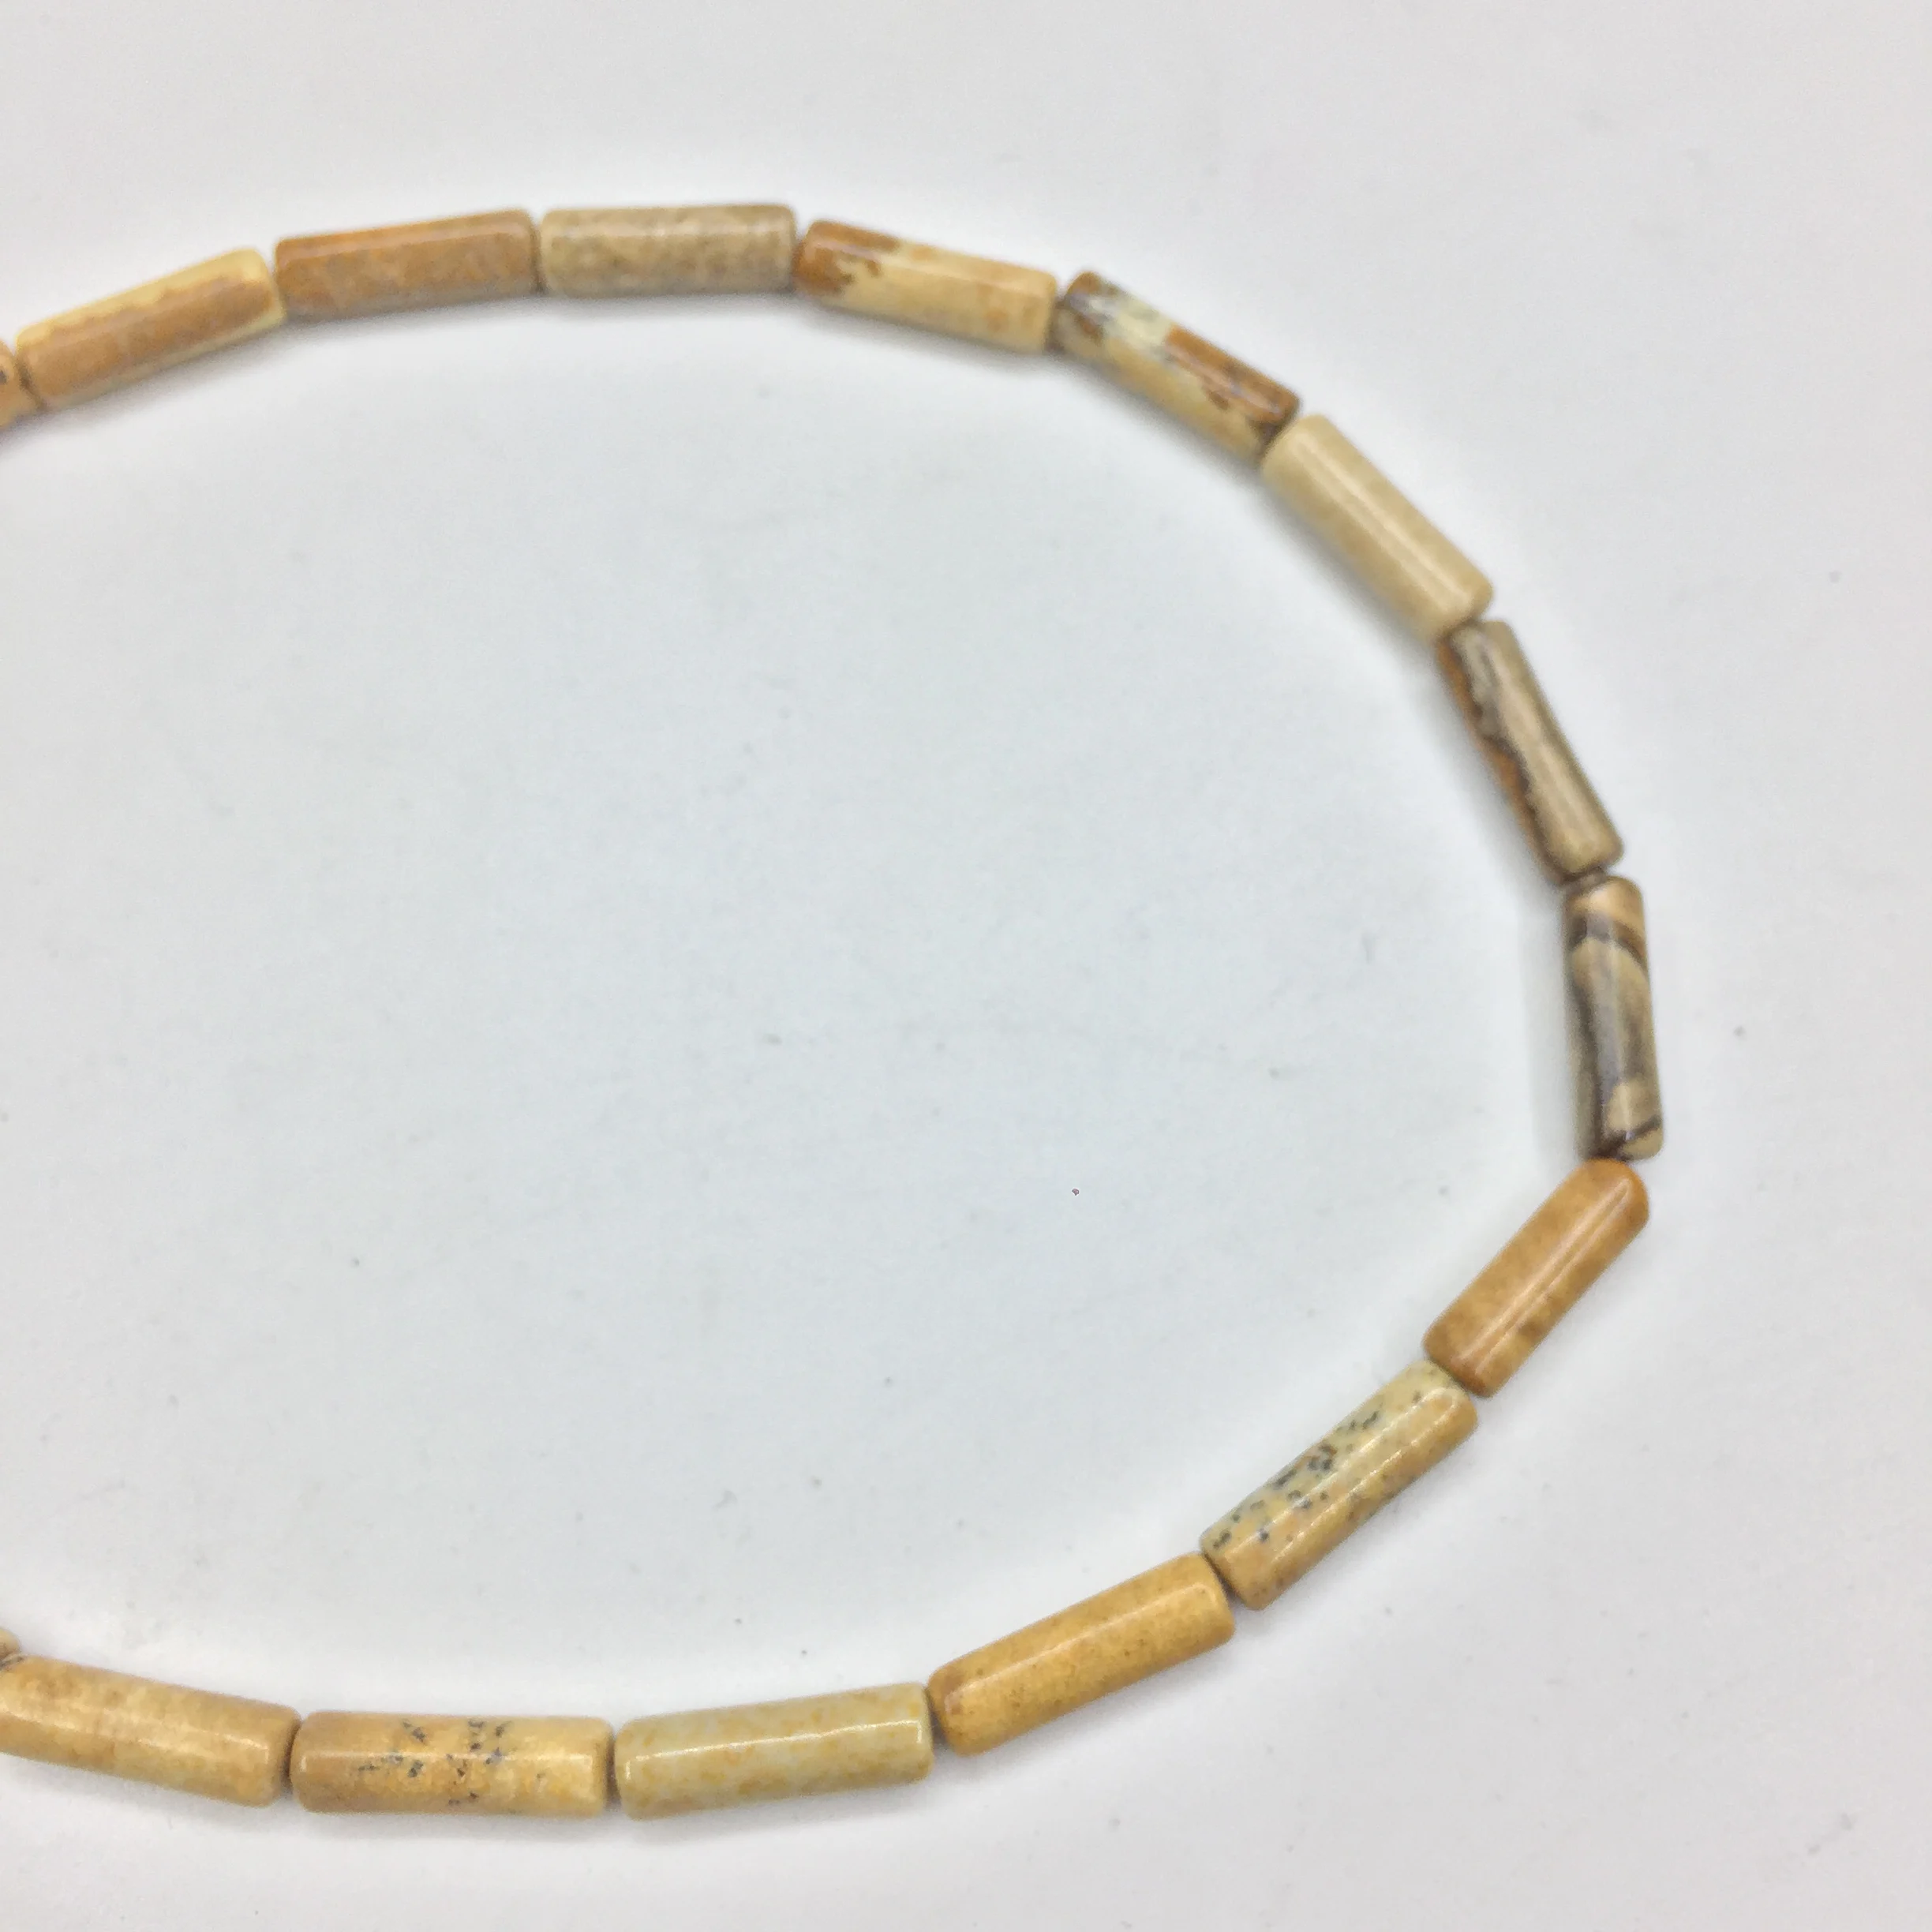 Eruifa 10 шт. 13 мм длиной, 4 мм толщиной полудрагоценный каменный Шарм Подвеска ювелирные изделия DIY серьги ожерелье 11 цветов